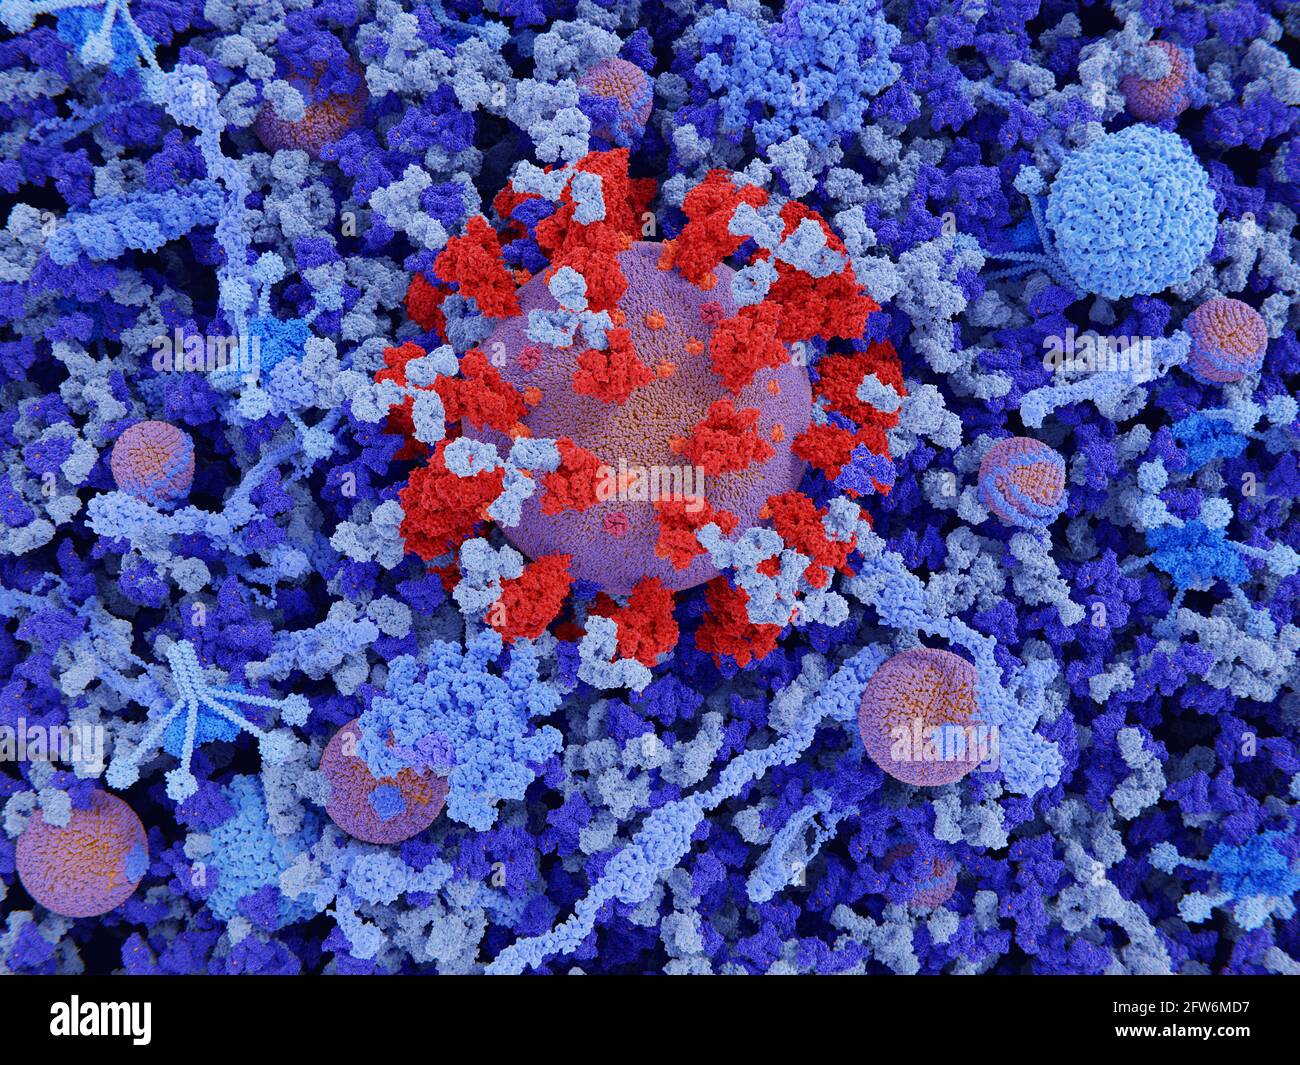 Coronavirus in blood plasma, illustration Stock Photo